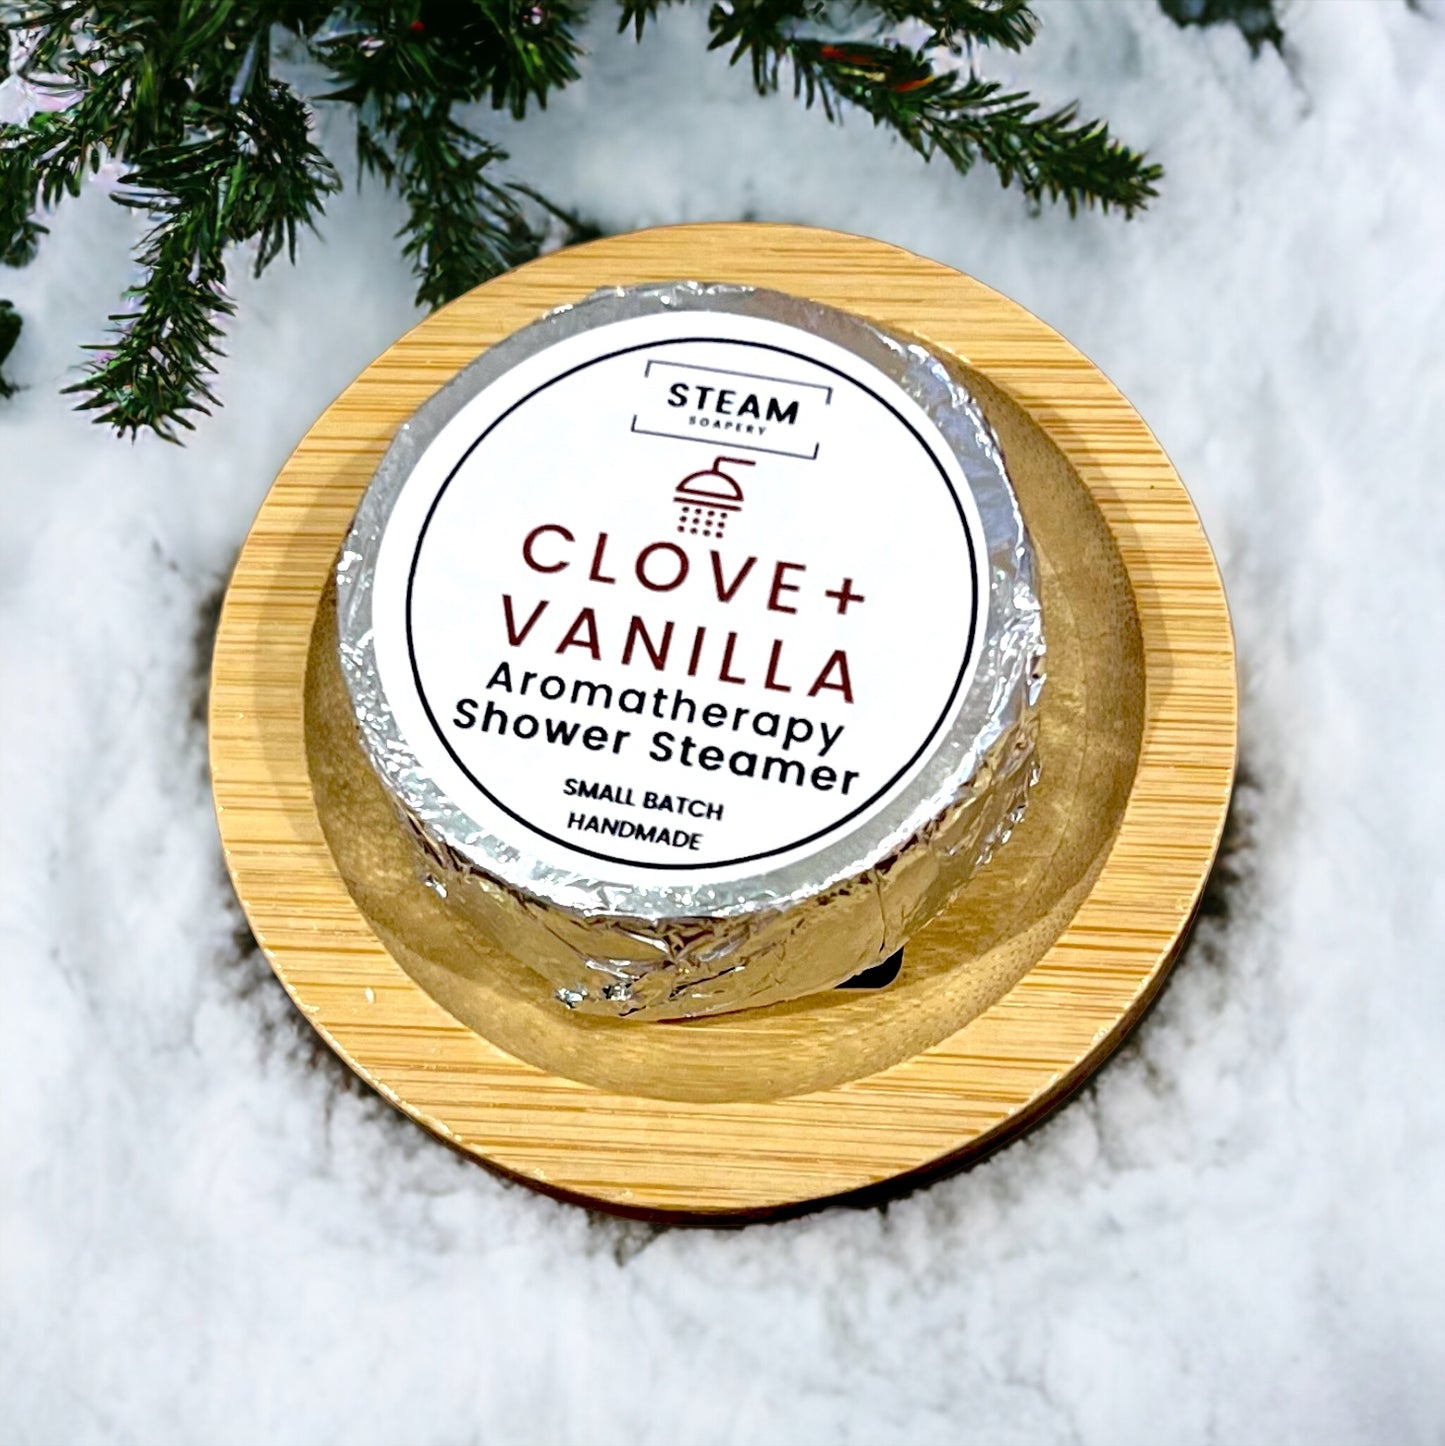 Clove + Vanilla Shower Steamer